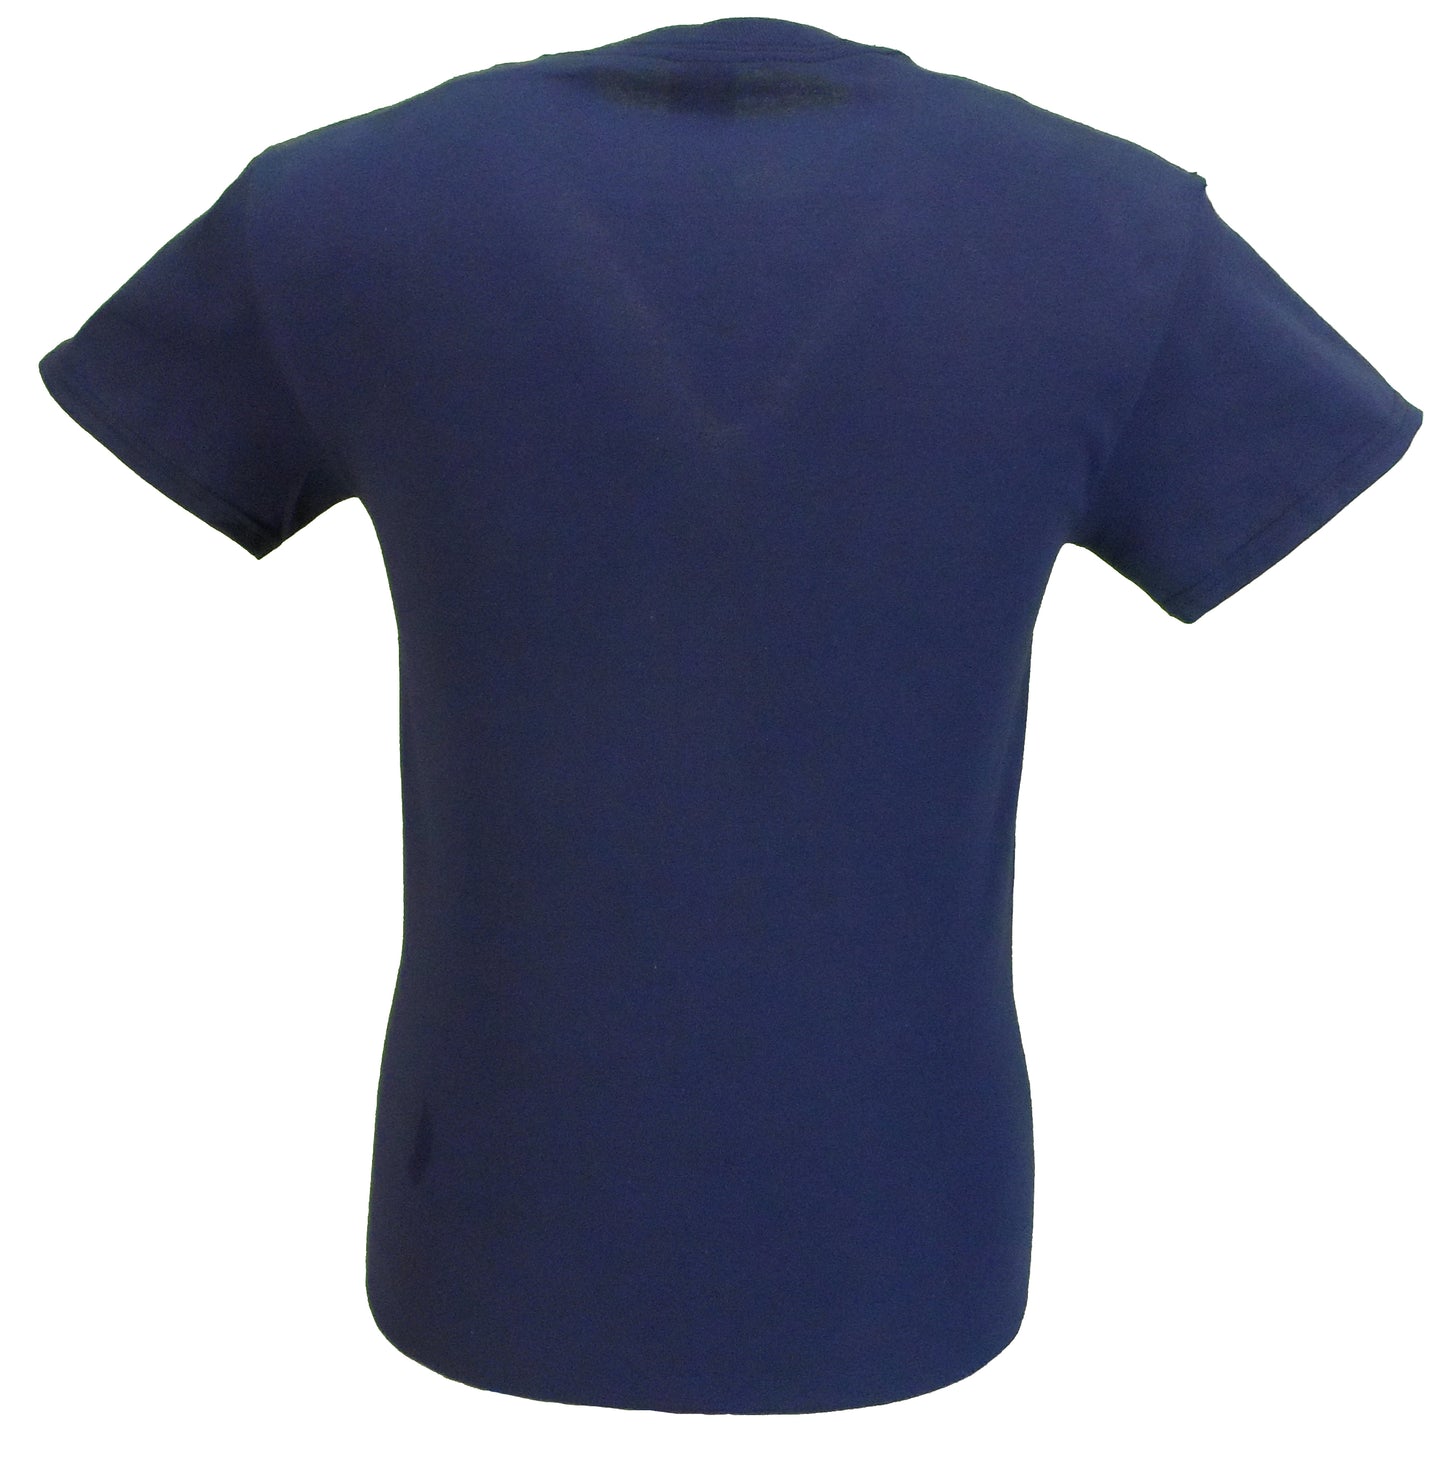 Mazeys t-shirt en coton rayé arc-en-ciel indie rétro bleu marine pour hommes des années 60